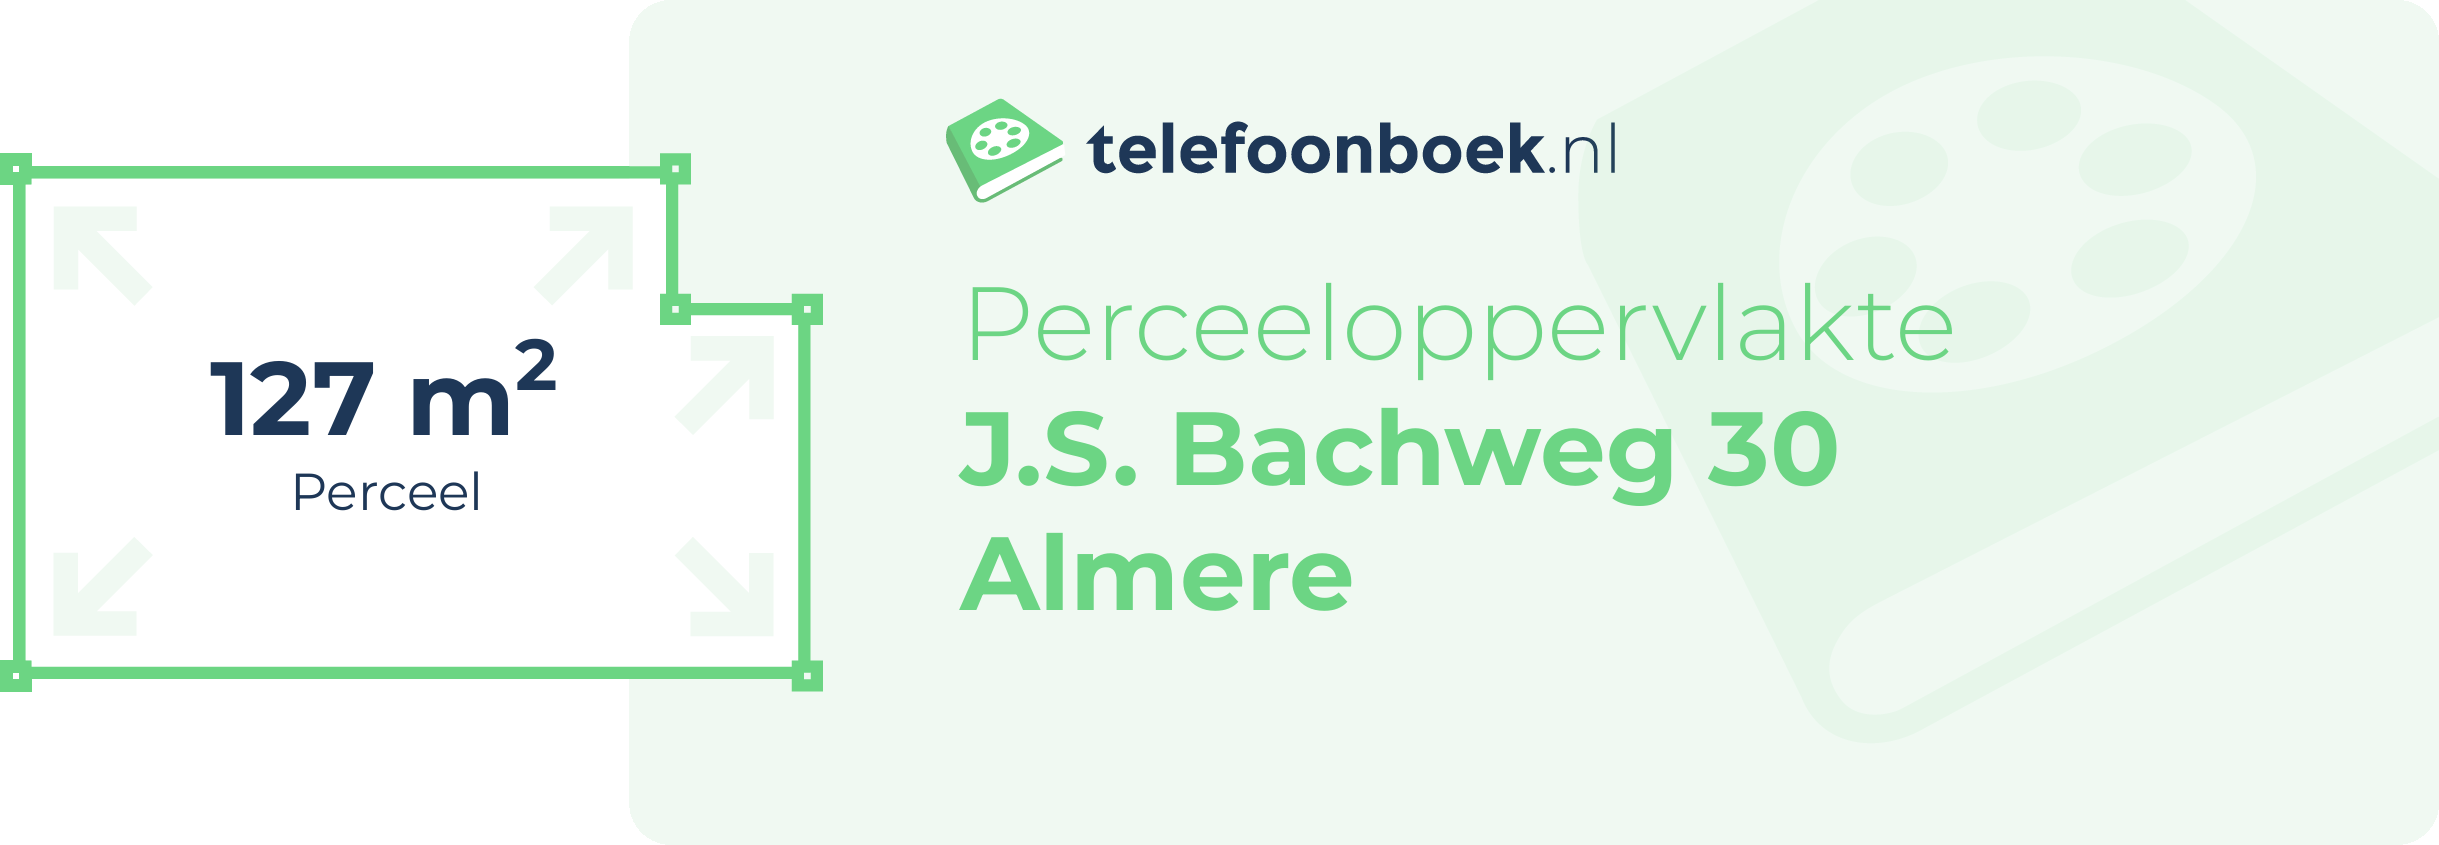 Perceeloppervlakte J.S. Bachweg 30 Almere